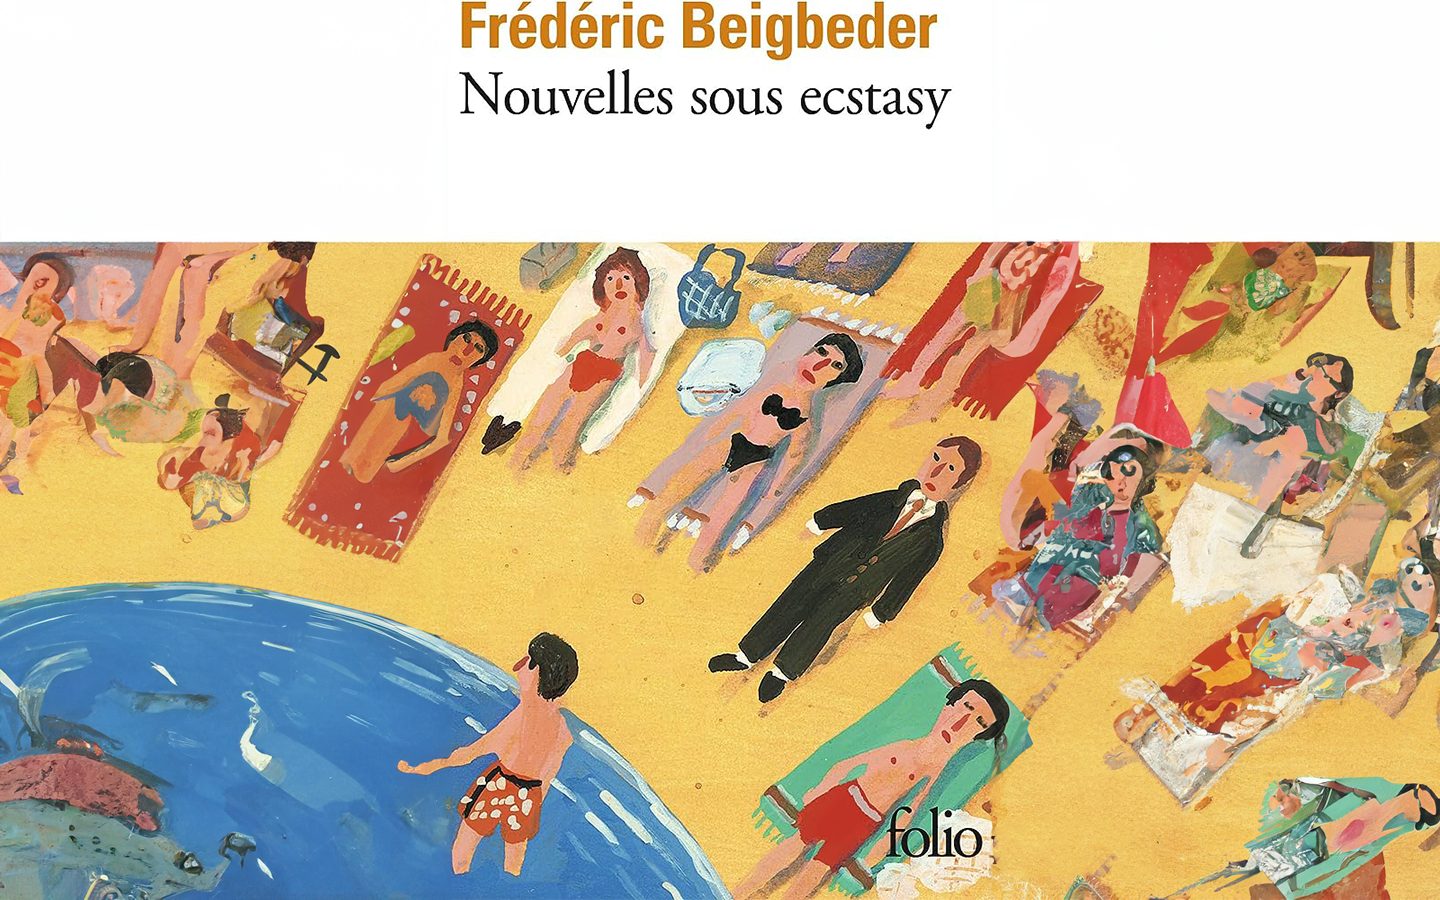 Couverture du livre "Nouvelles sous ecstasy" écrit par Frederic Beigbeder édition Folio + complétion IA générative adobe.